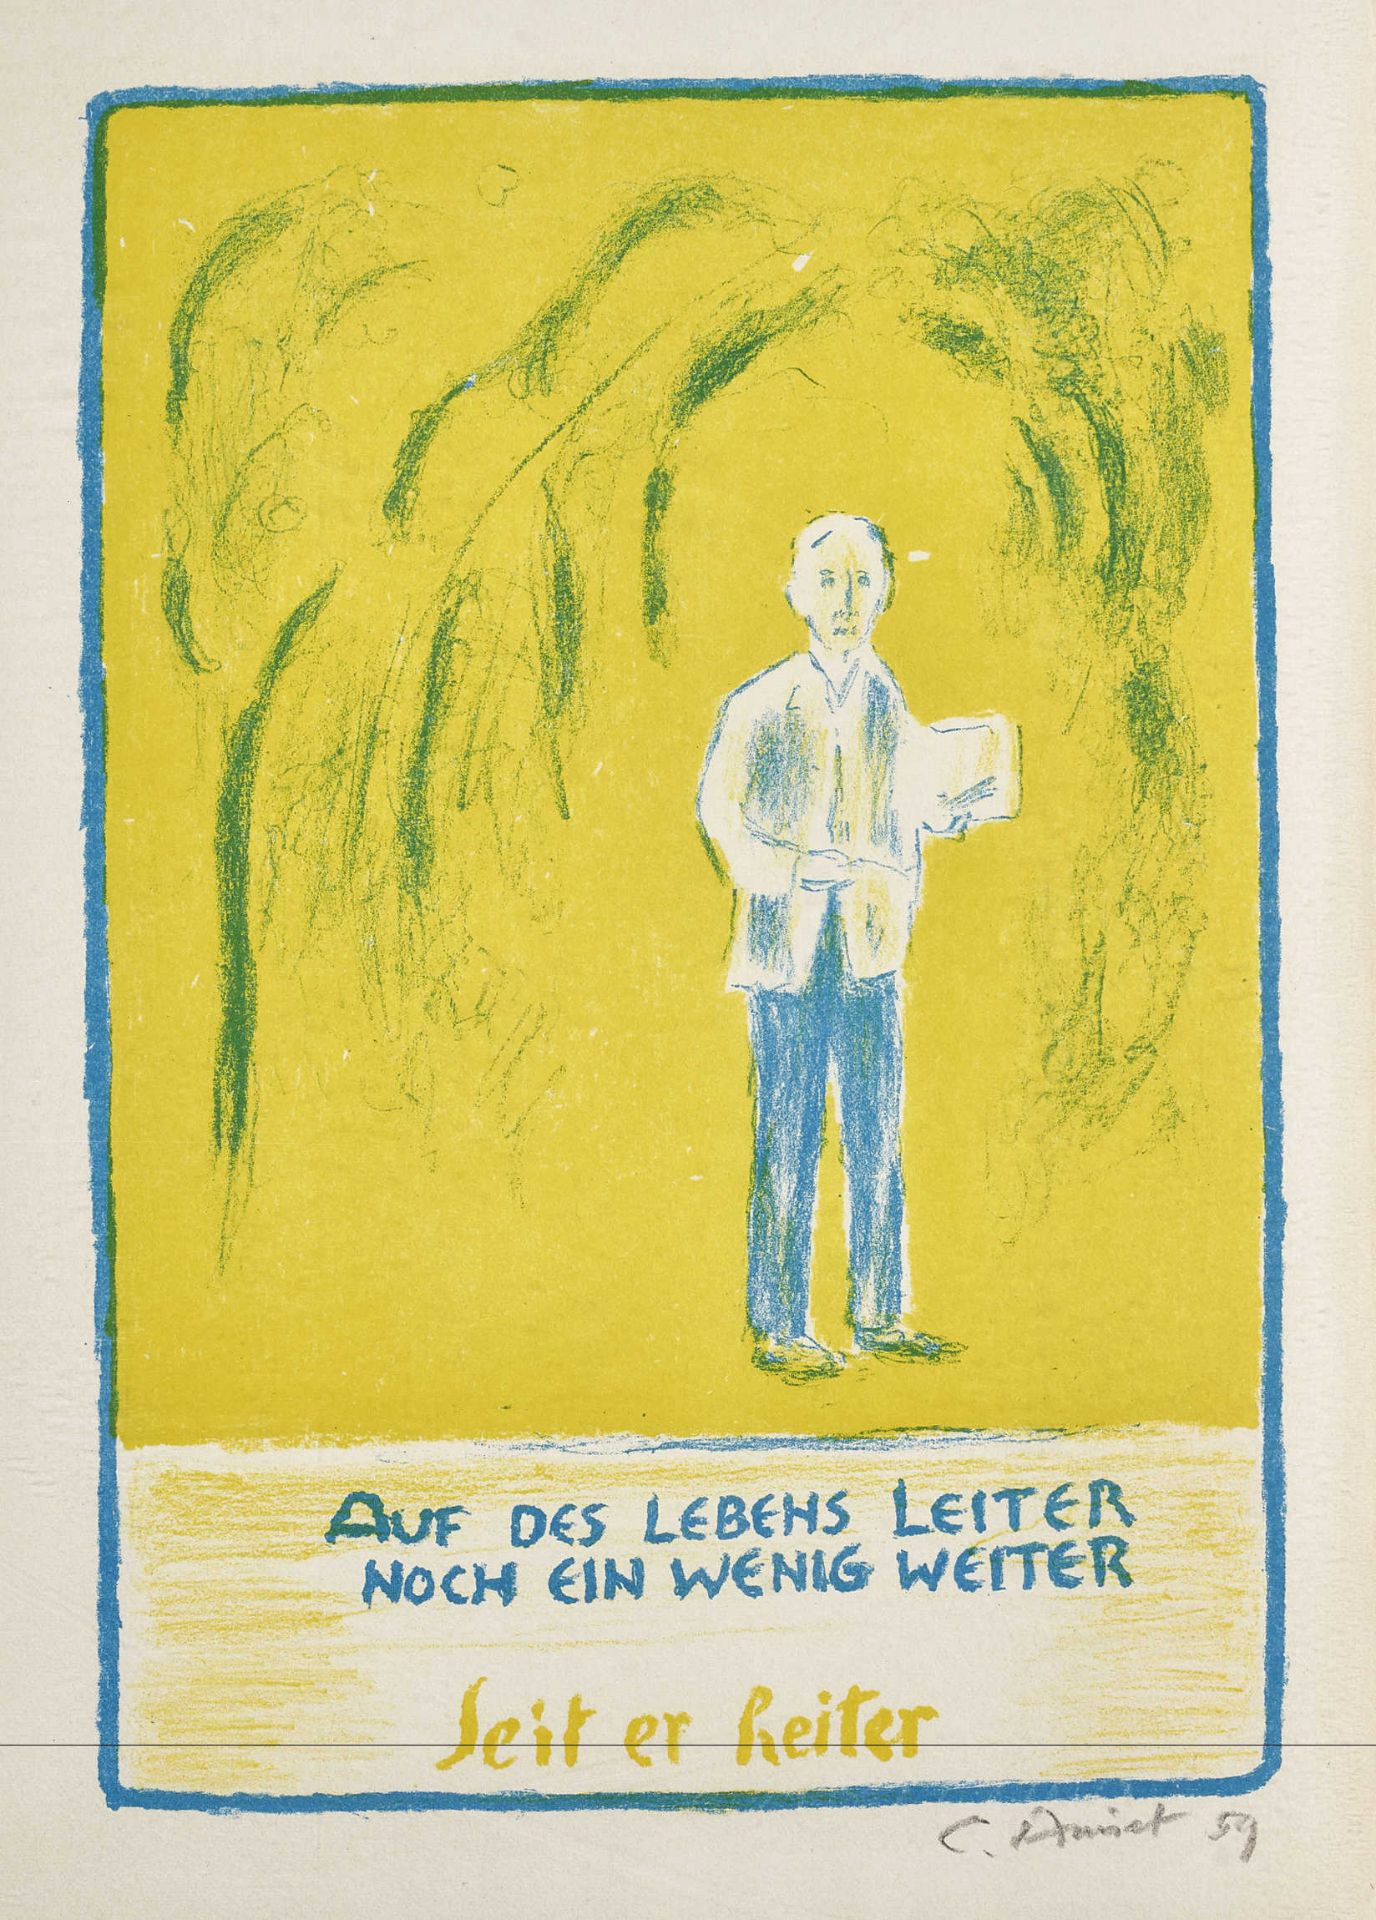 AMIET, CUNOSolothurn 1868 - 1961 OschwandSelbstbildnis stehend am Zeichenblock.Farblithografie,